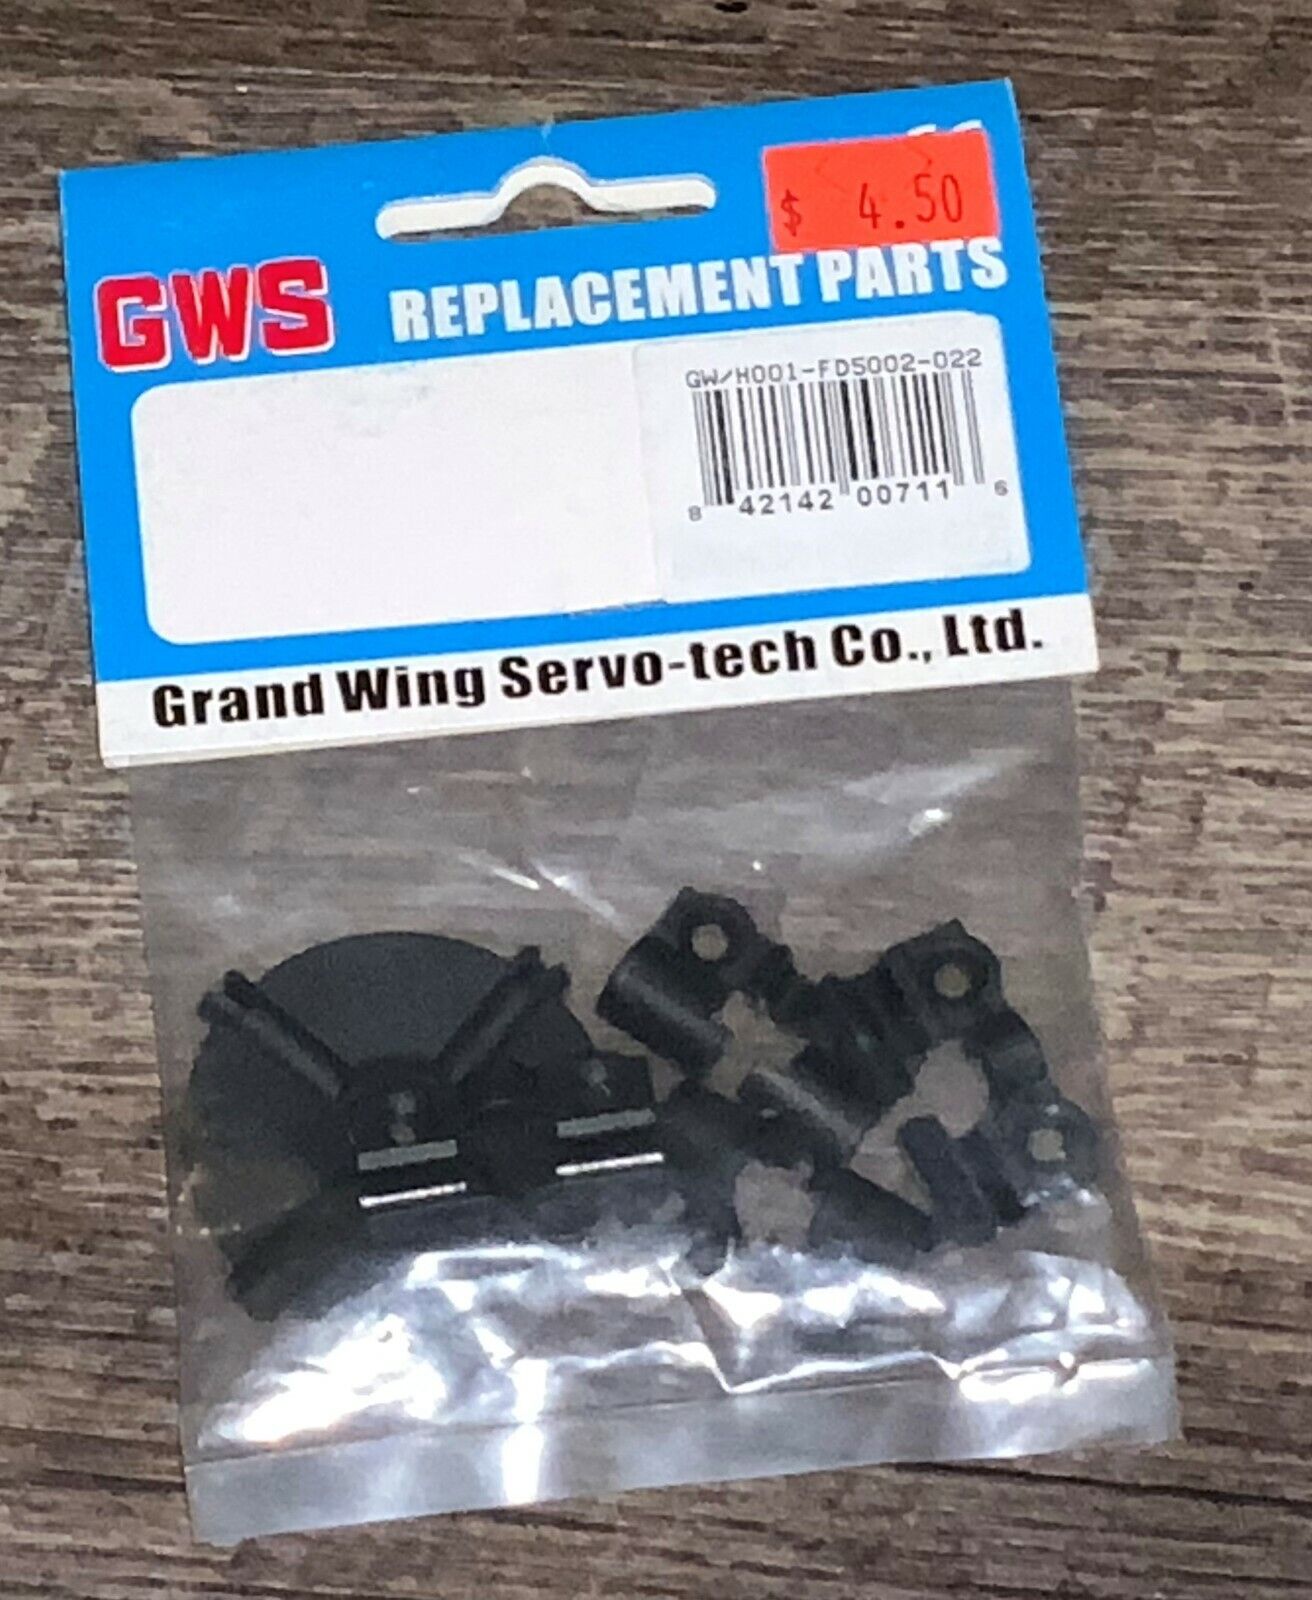 GWS GW H001-FD5002-002 RC PART RARE 